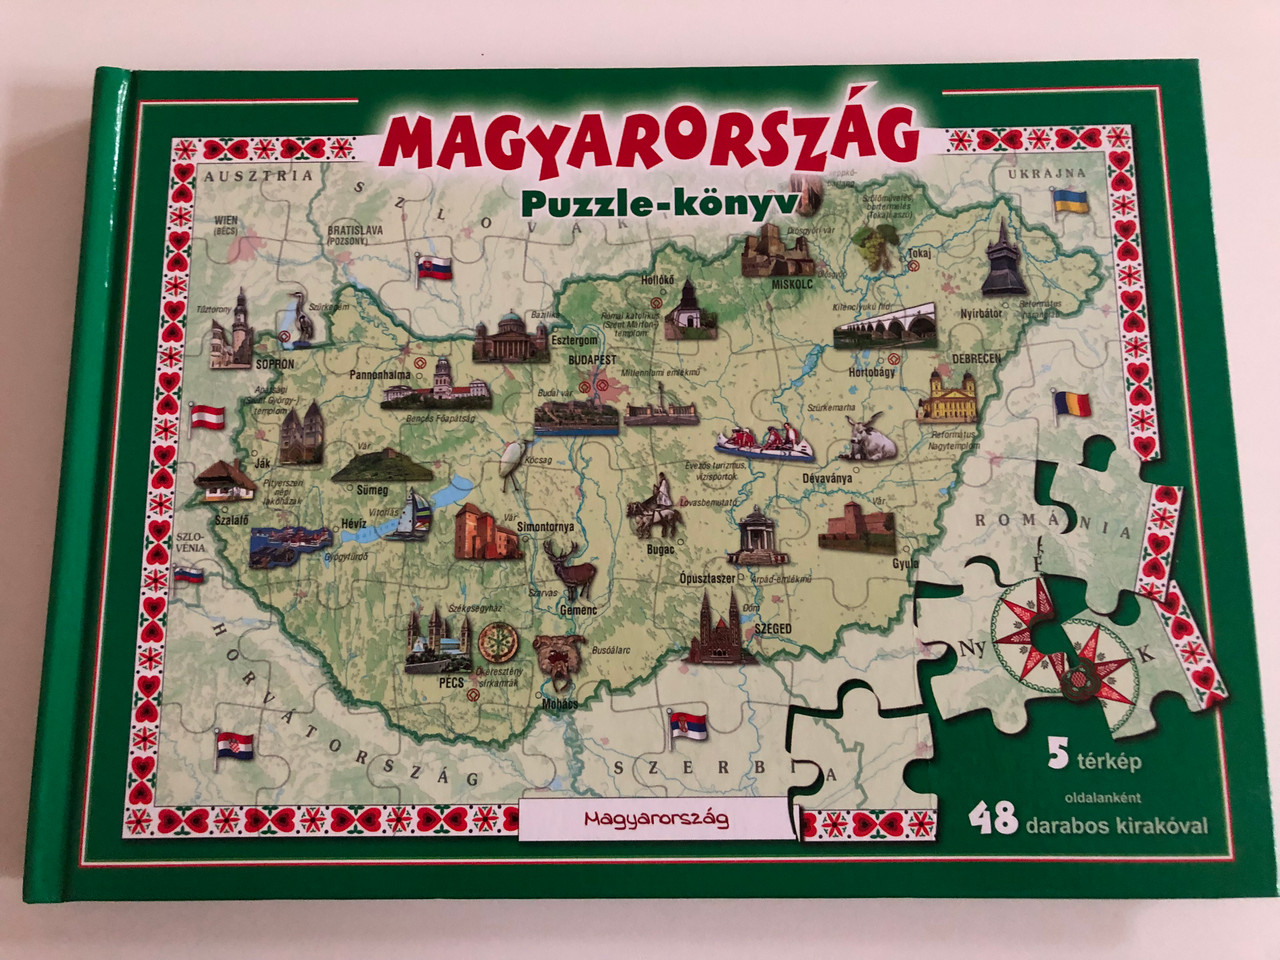 Magyarország Puzzle-könyv / Hungary puzzle book / 5 térkép - 48 darabos  kirakóval / 5 maps with 48 pcs puzzle per map / Manó könyvek 2015 /  Hardcover - bibleinmylanguage